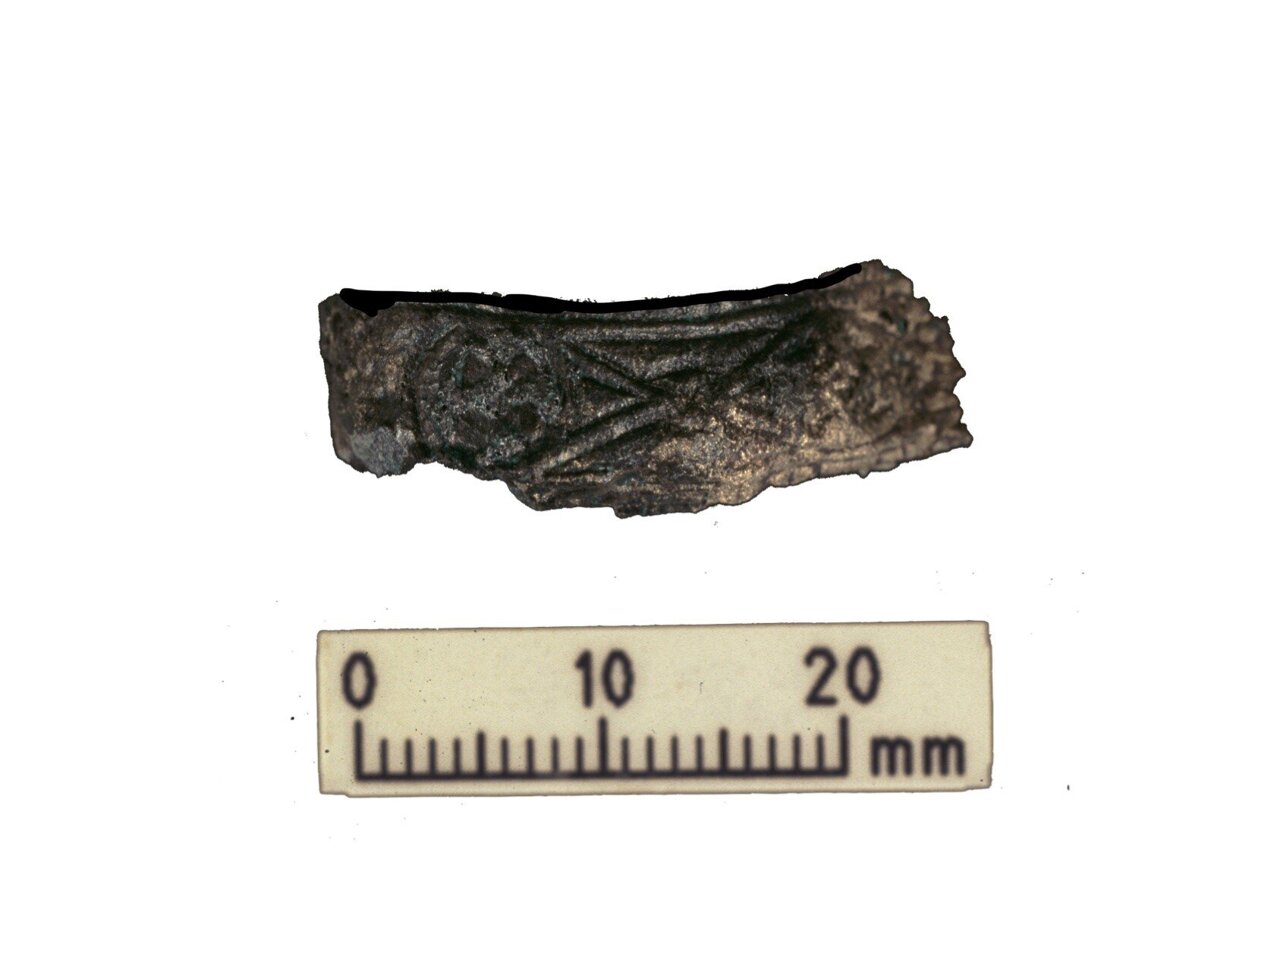 Dekorerad fäste från vikingakrigarens svärd. Svärdet hittades i samma grav som de mänskliga och djurlämningar som analyserades under den senaste forskningen.